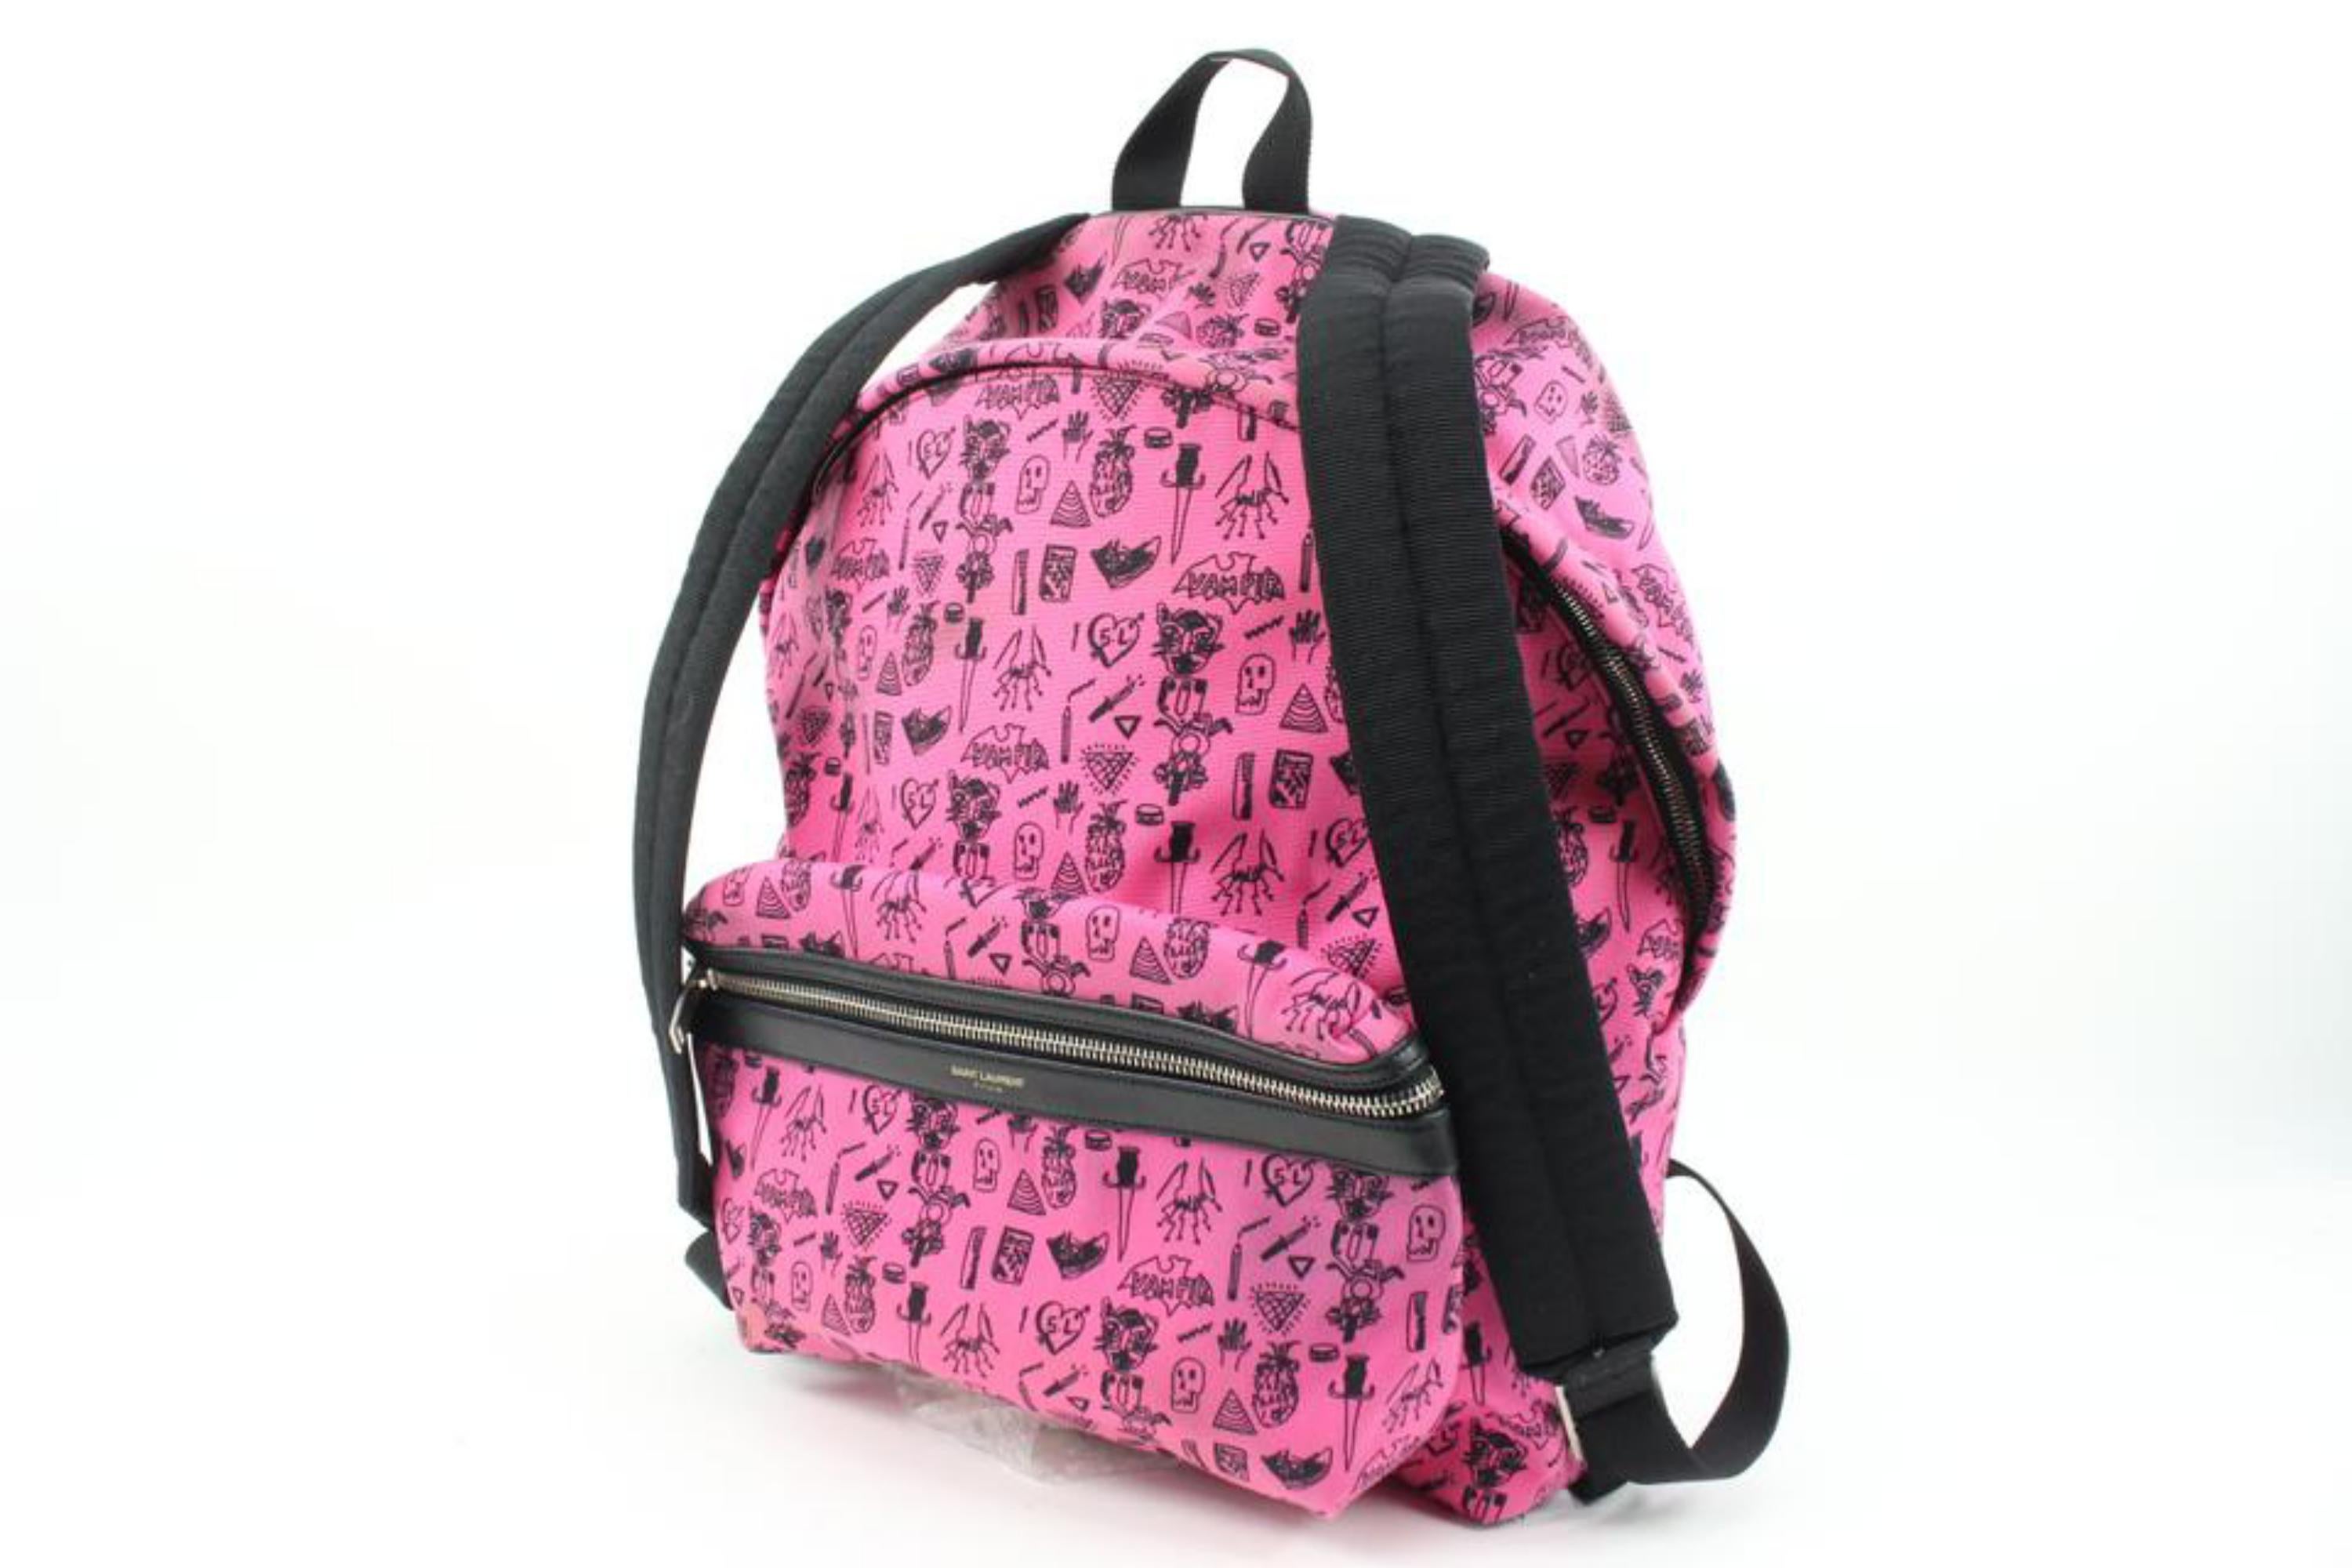 Saint Laurent Hot Pink Doodle Print City Backpack 54ys23s
Code de date/Numéro de série : IND326865-0514
Fabriqué en : Italie
Mesures : Longueur :  15